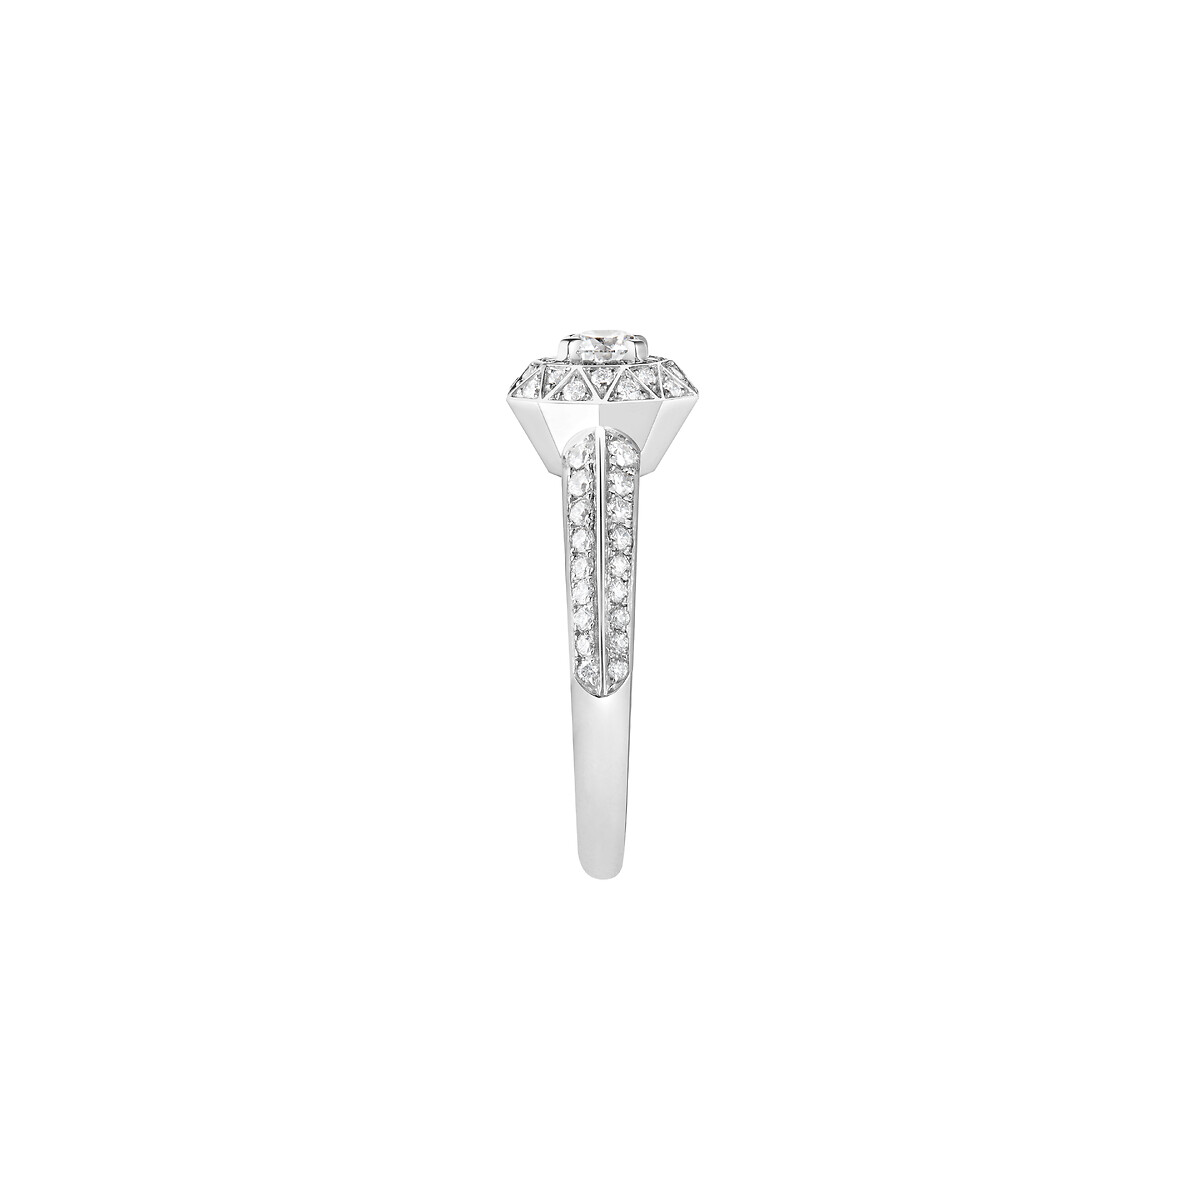 Second product packshot​ Etoile de Paris钻石戒指